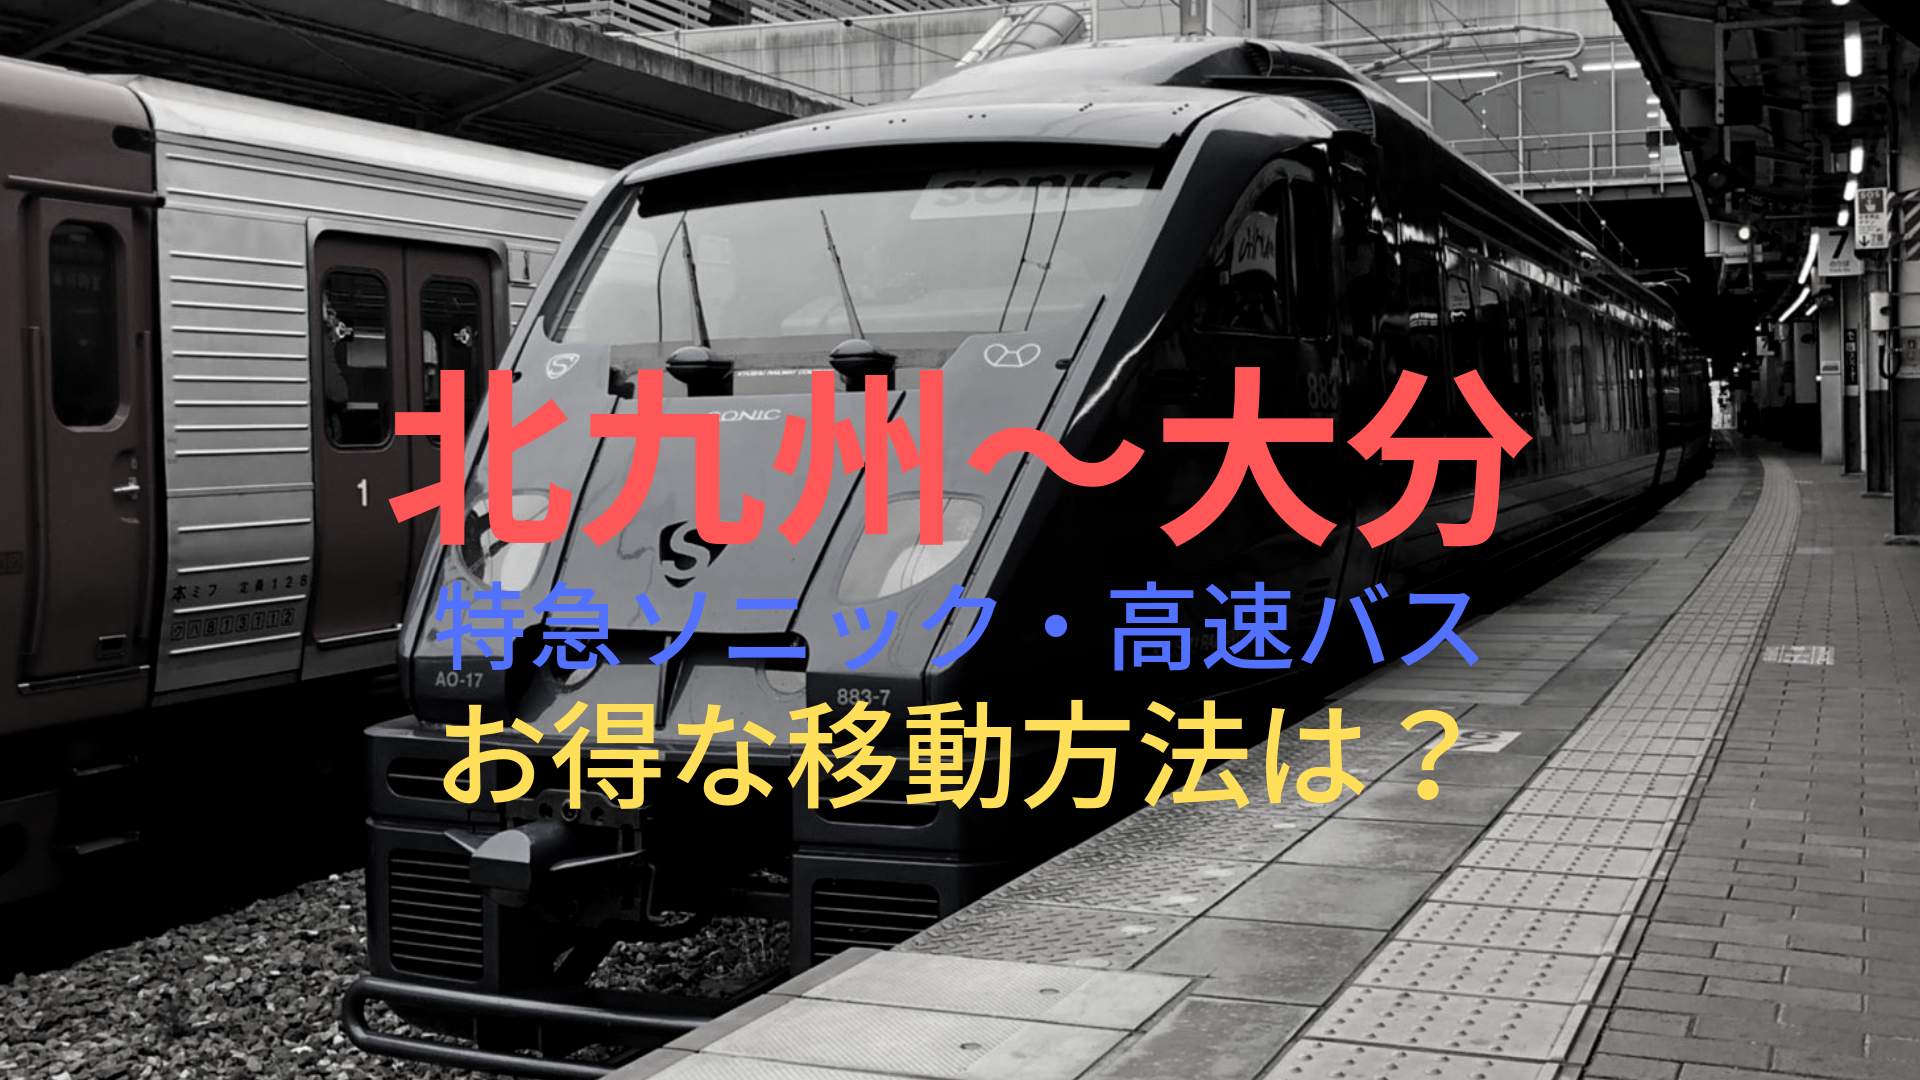 北九州 小倉 大分 1500円 格安で移動する方法は 特急ソニック 高速バスをそれぞれ比較 ばしたく交通